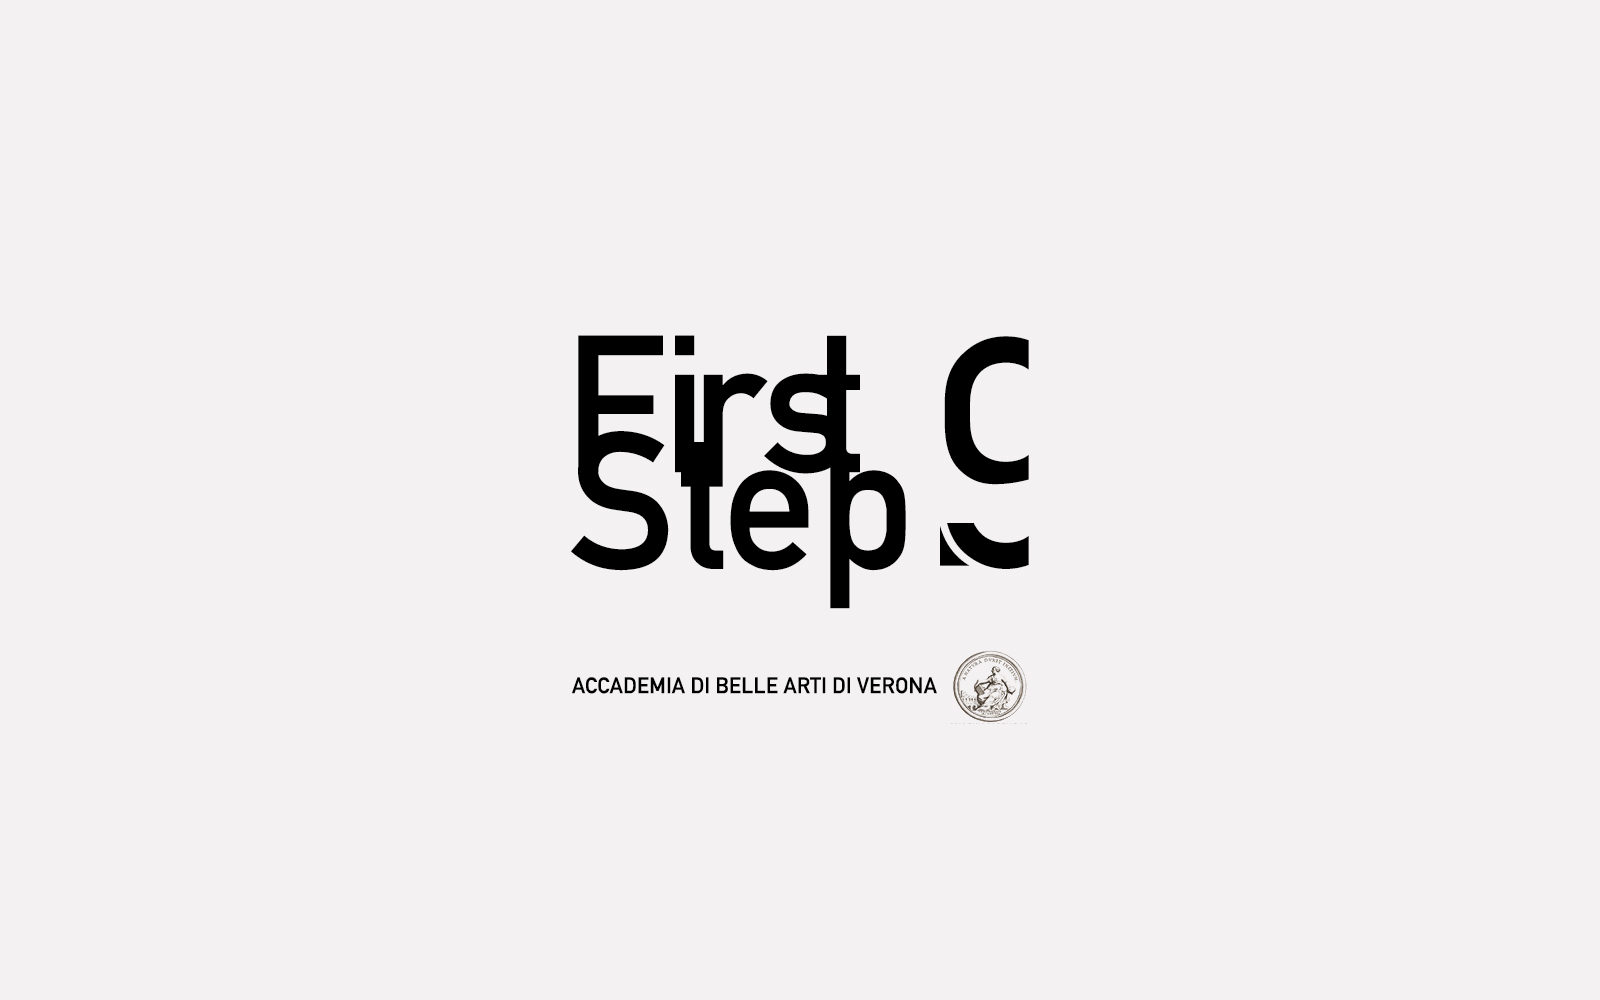 progetto del marchio first step 9, versione moncolore, progetto diadestudio agenzia di comunicazione arco di trento